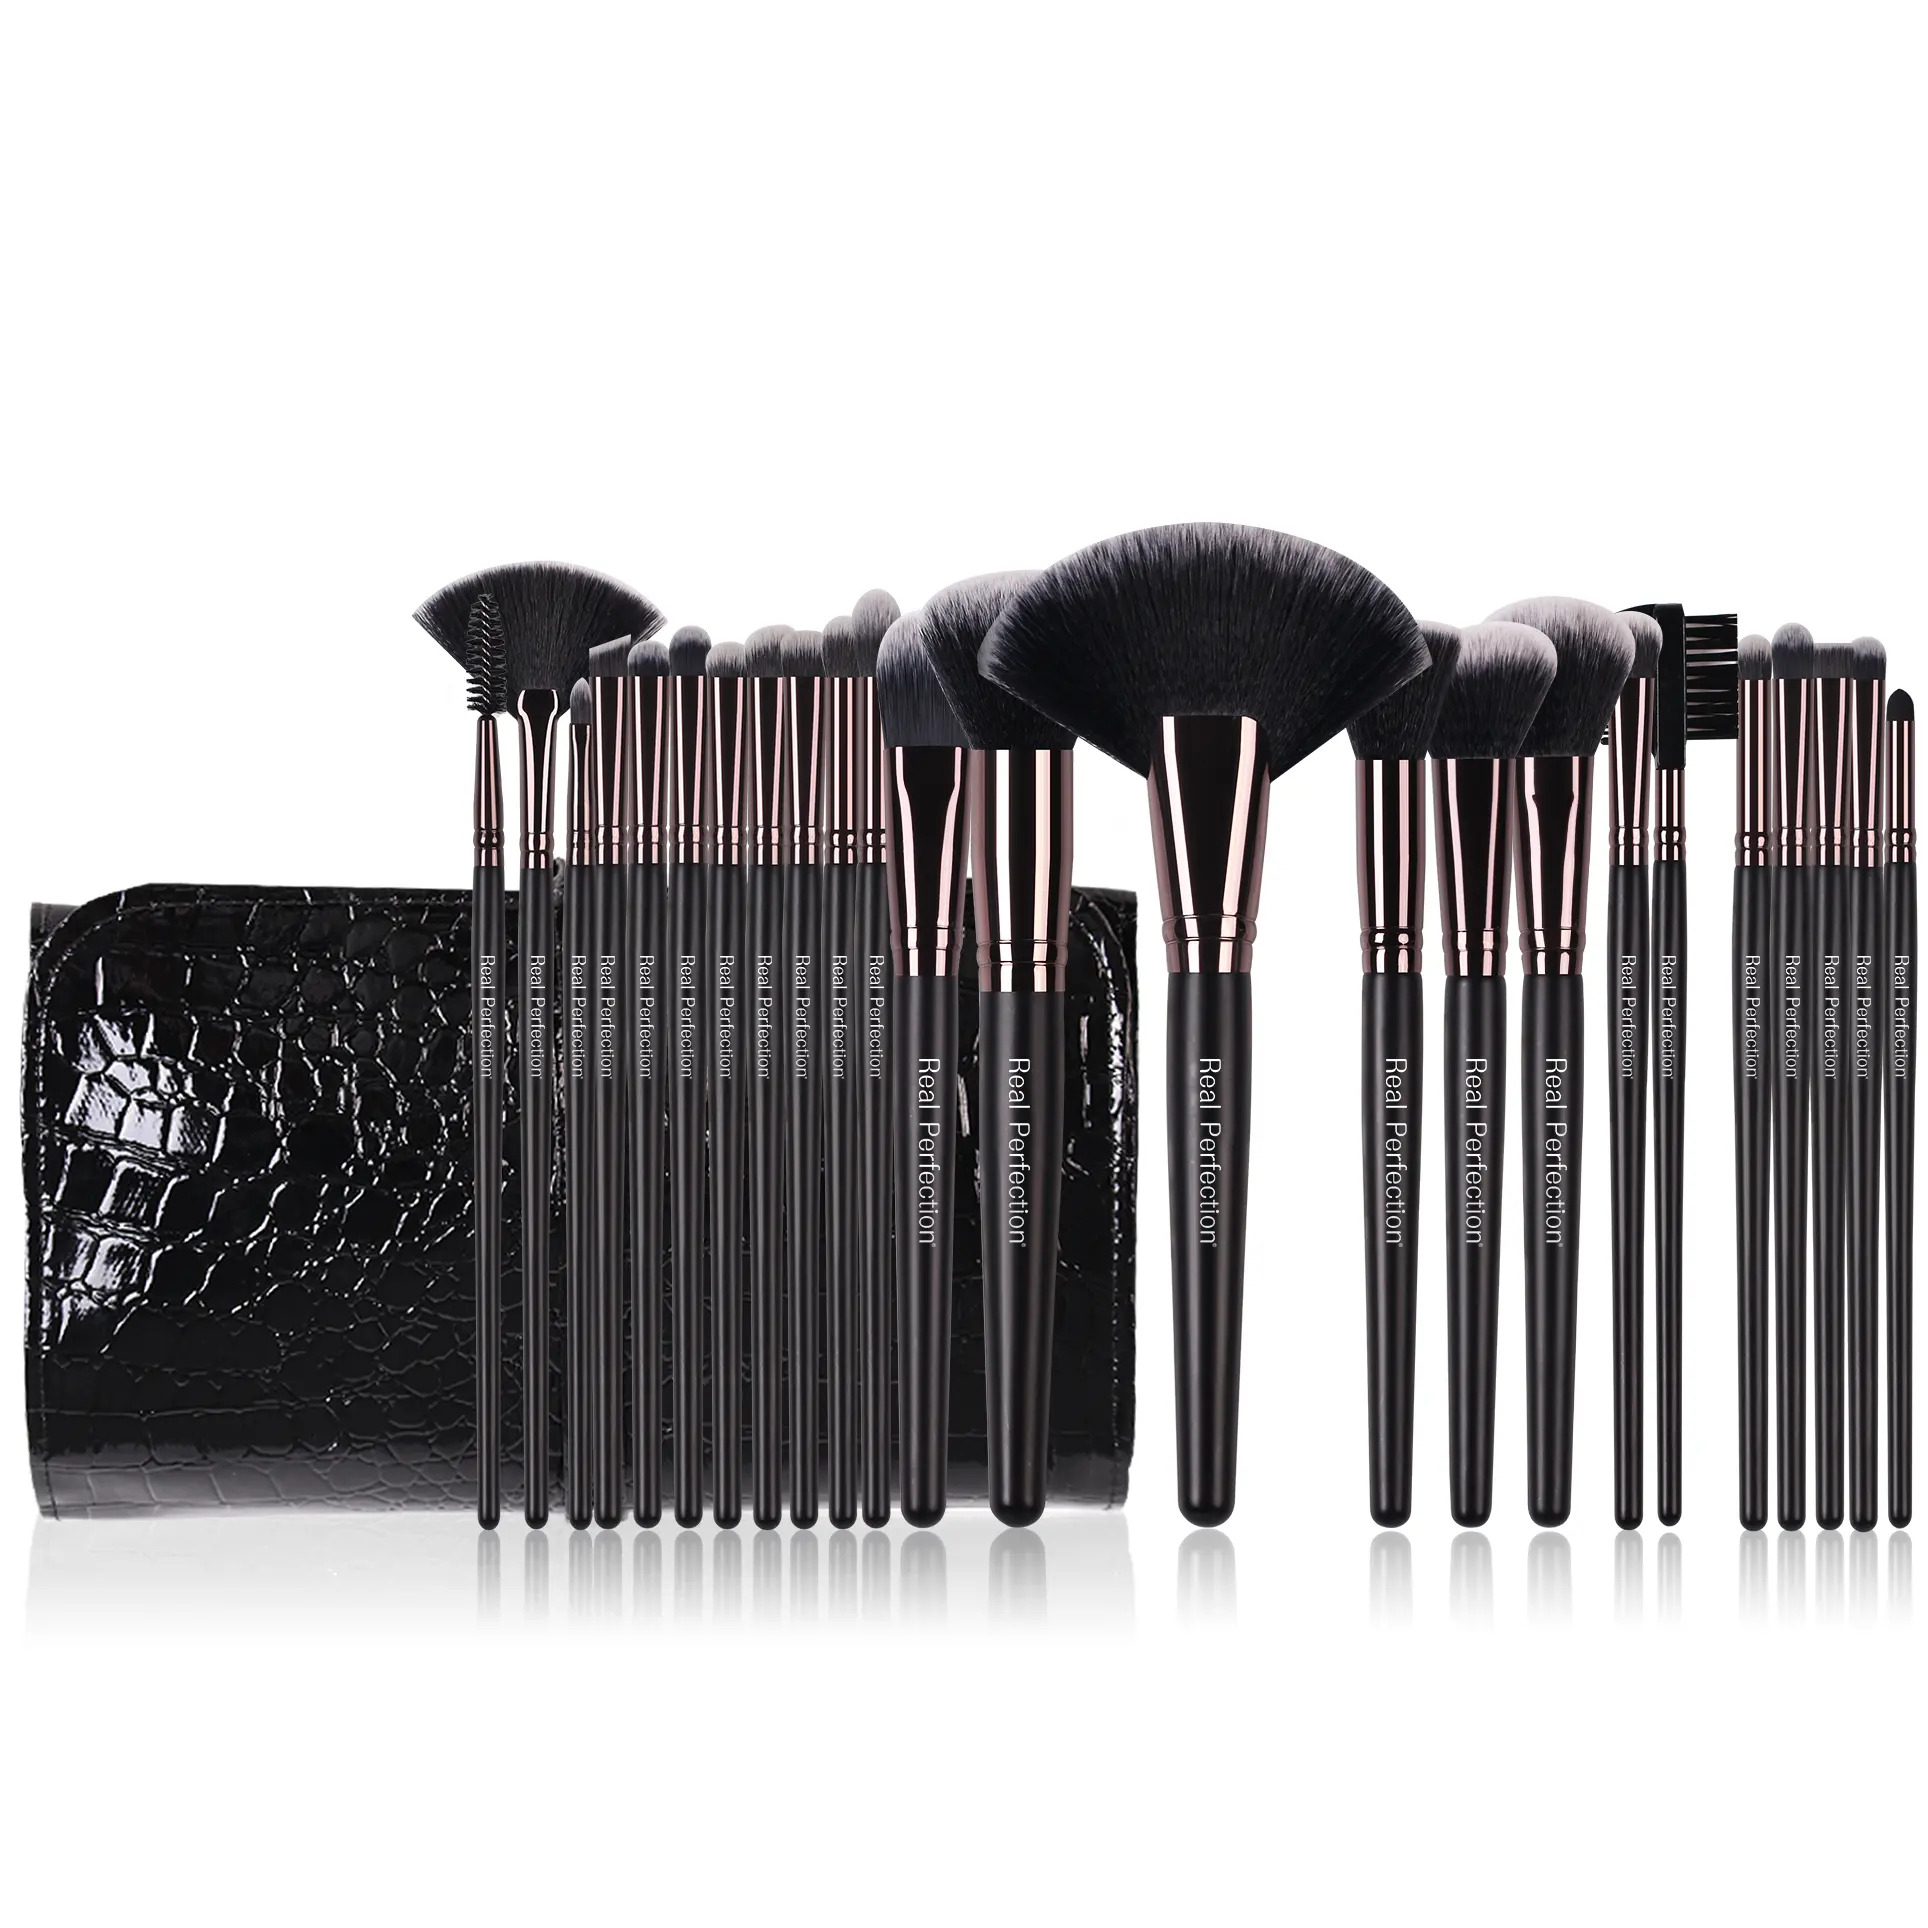 Rp Hoge Kwaliteit Lage Prijs Enkele Zwarte Make-Up Borstel Professionele Aangepaste Private Merk Make-Up Borstel Set